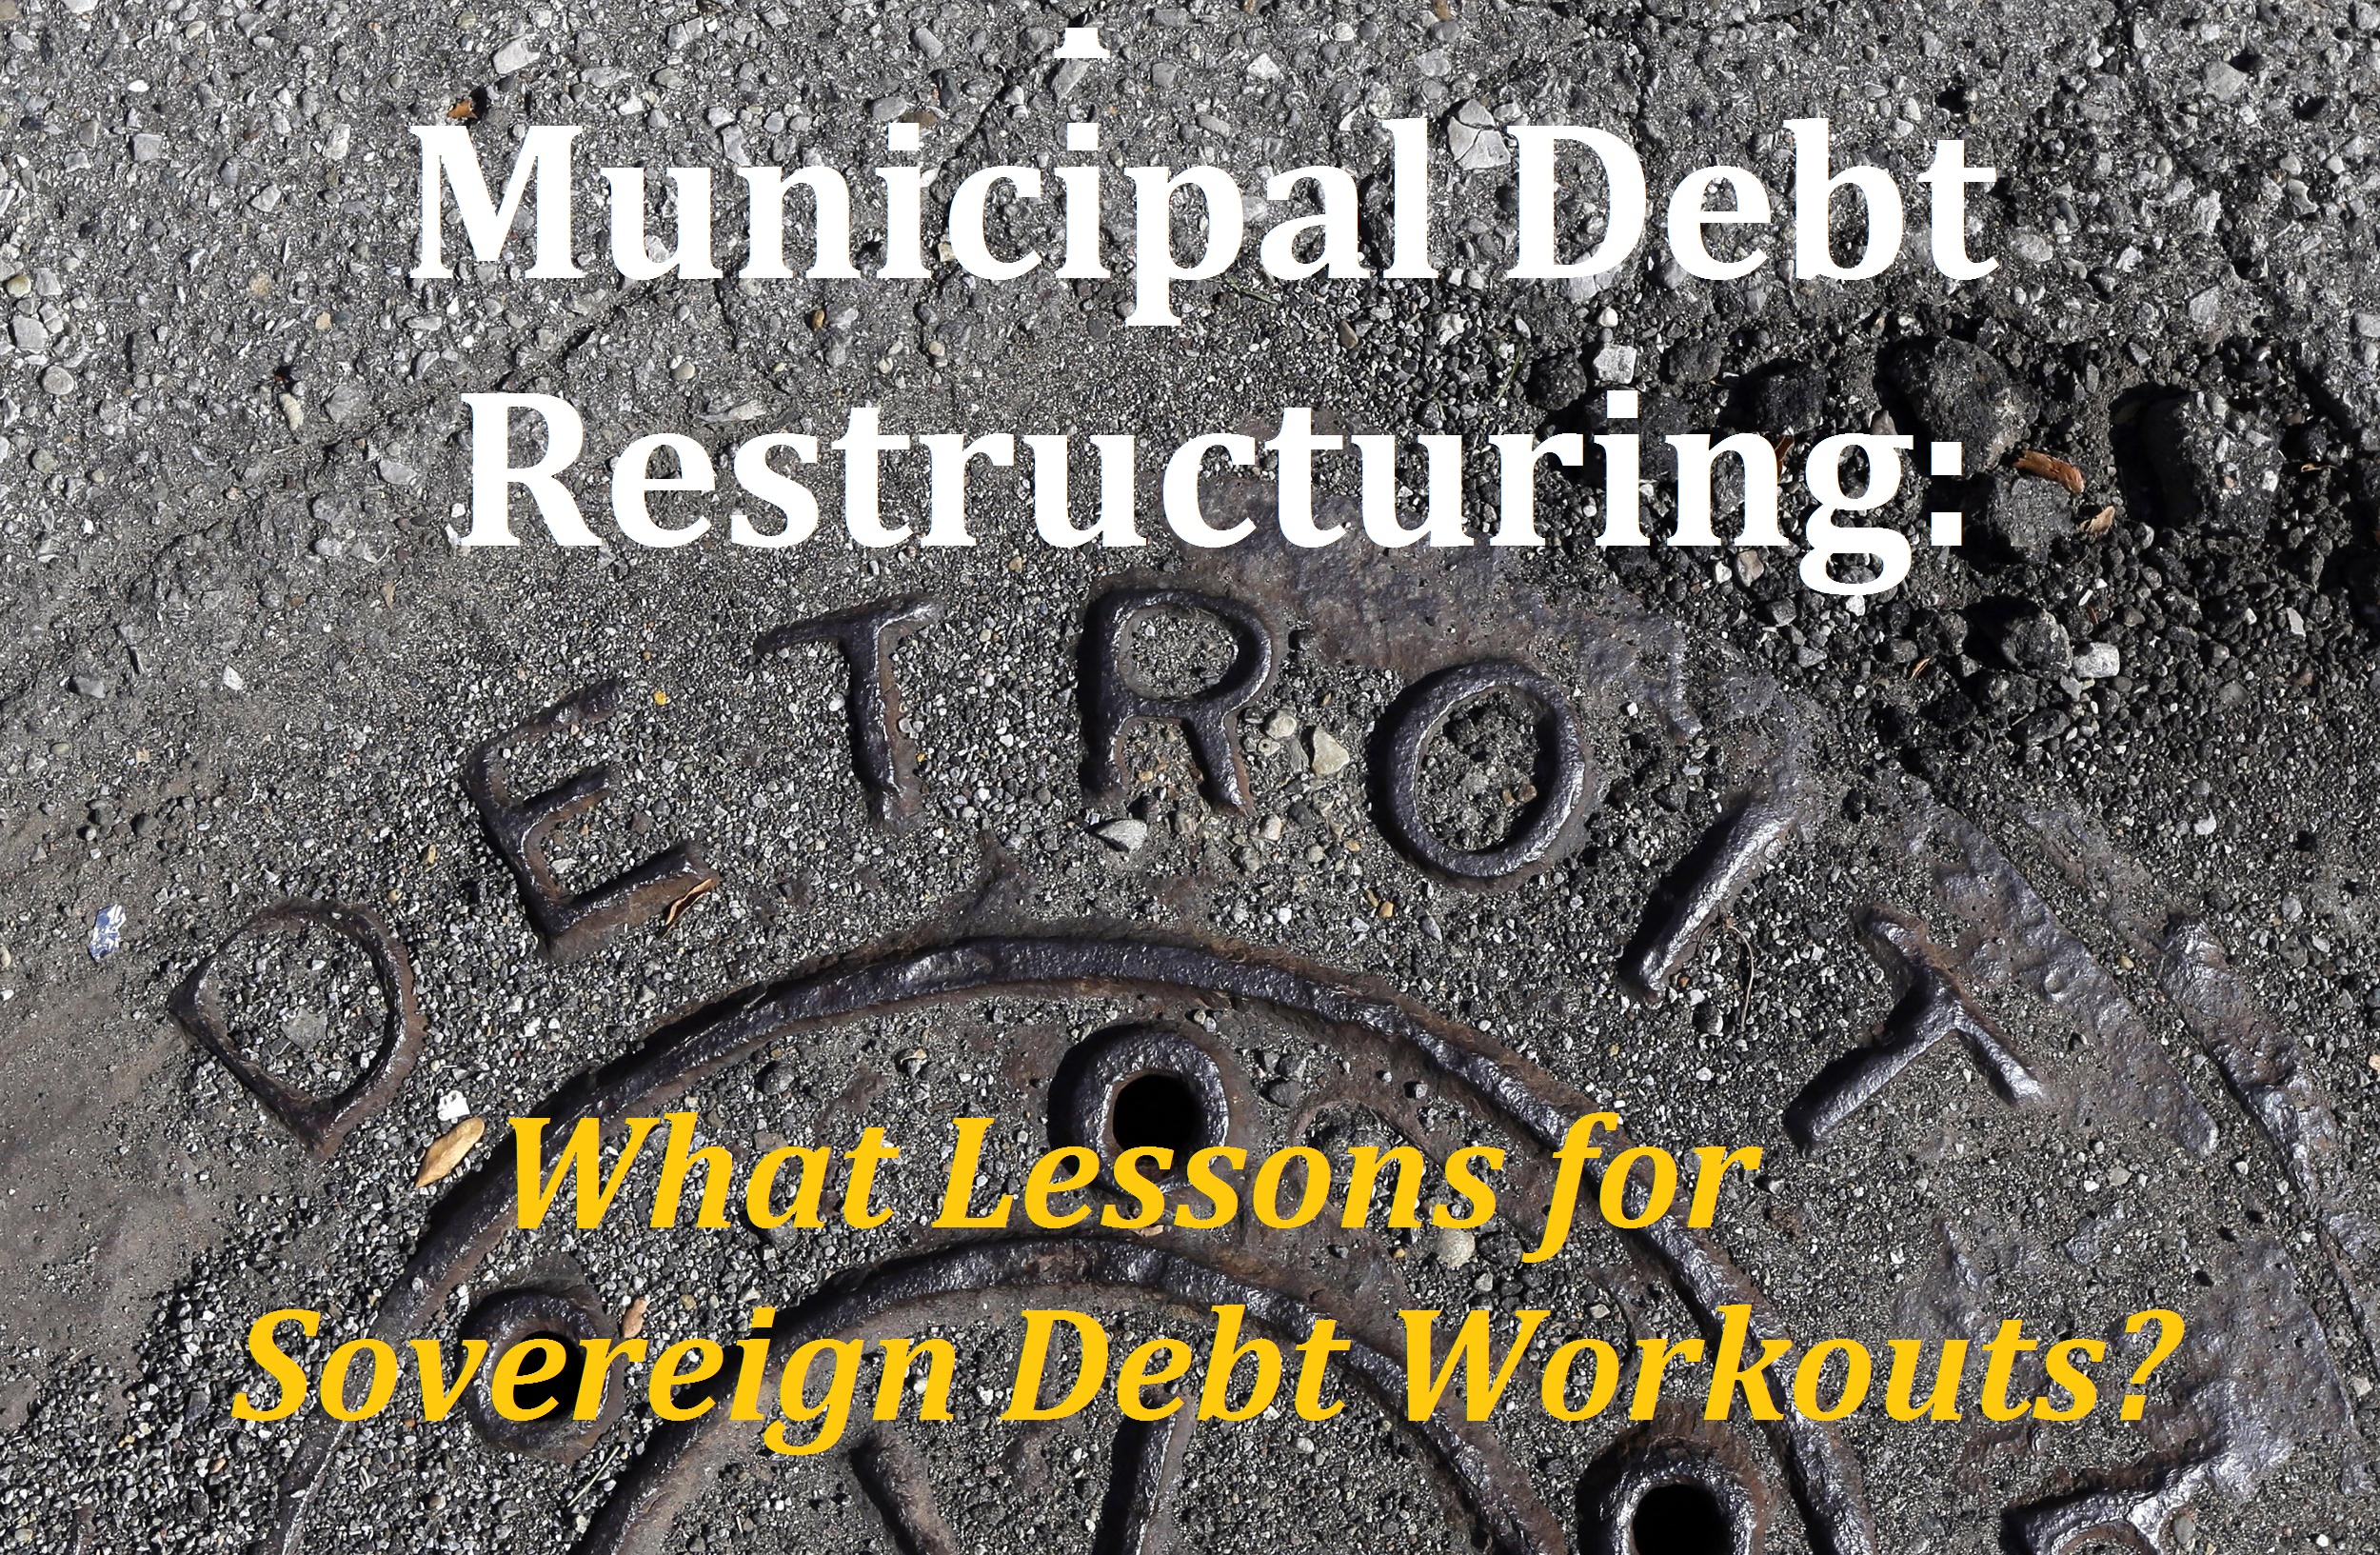 detroit-debt workout lessons